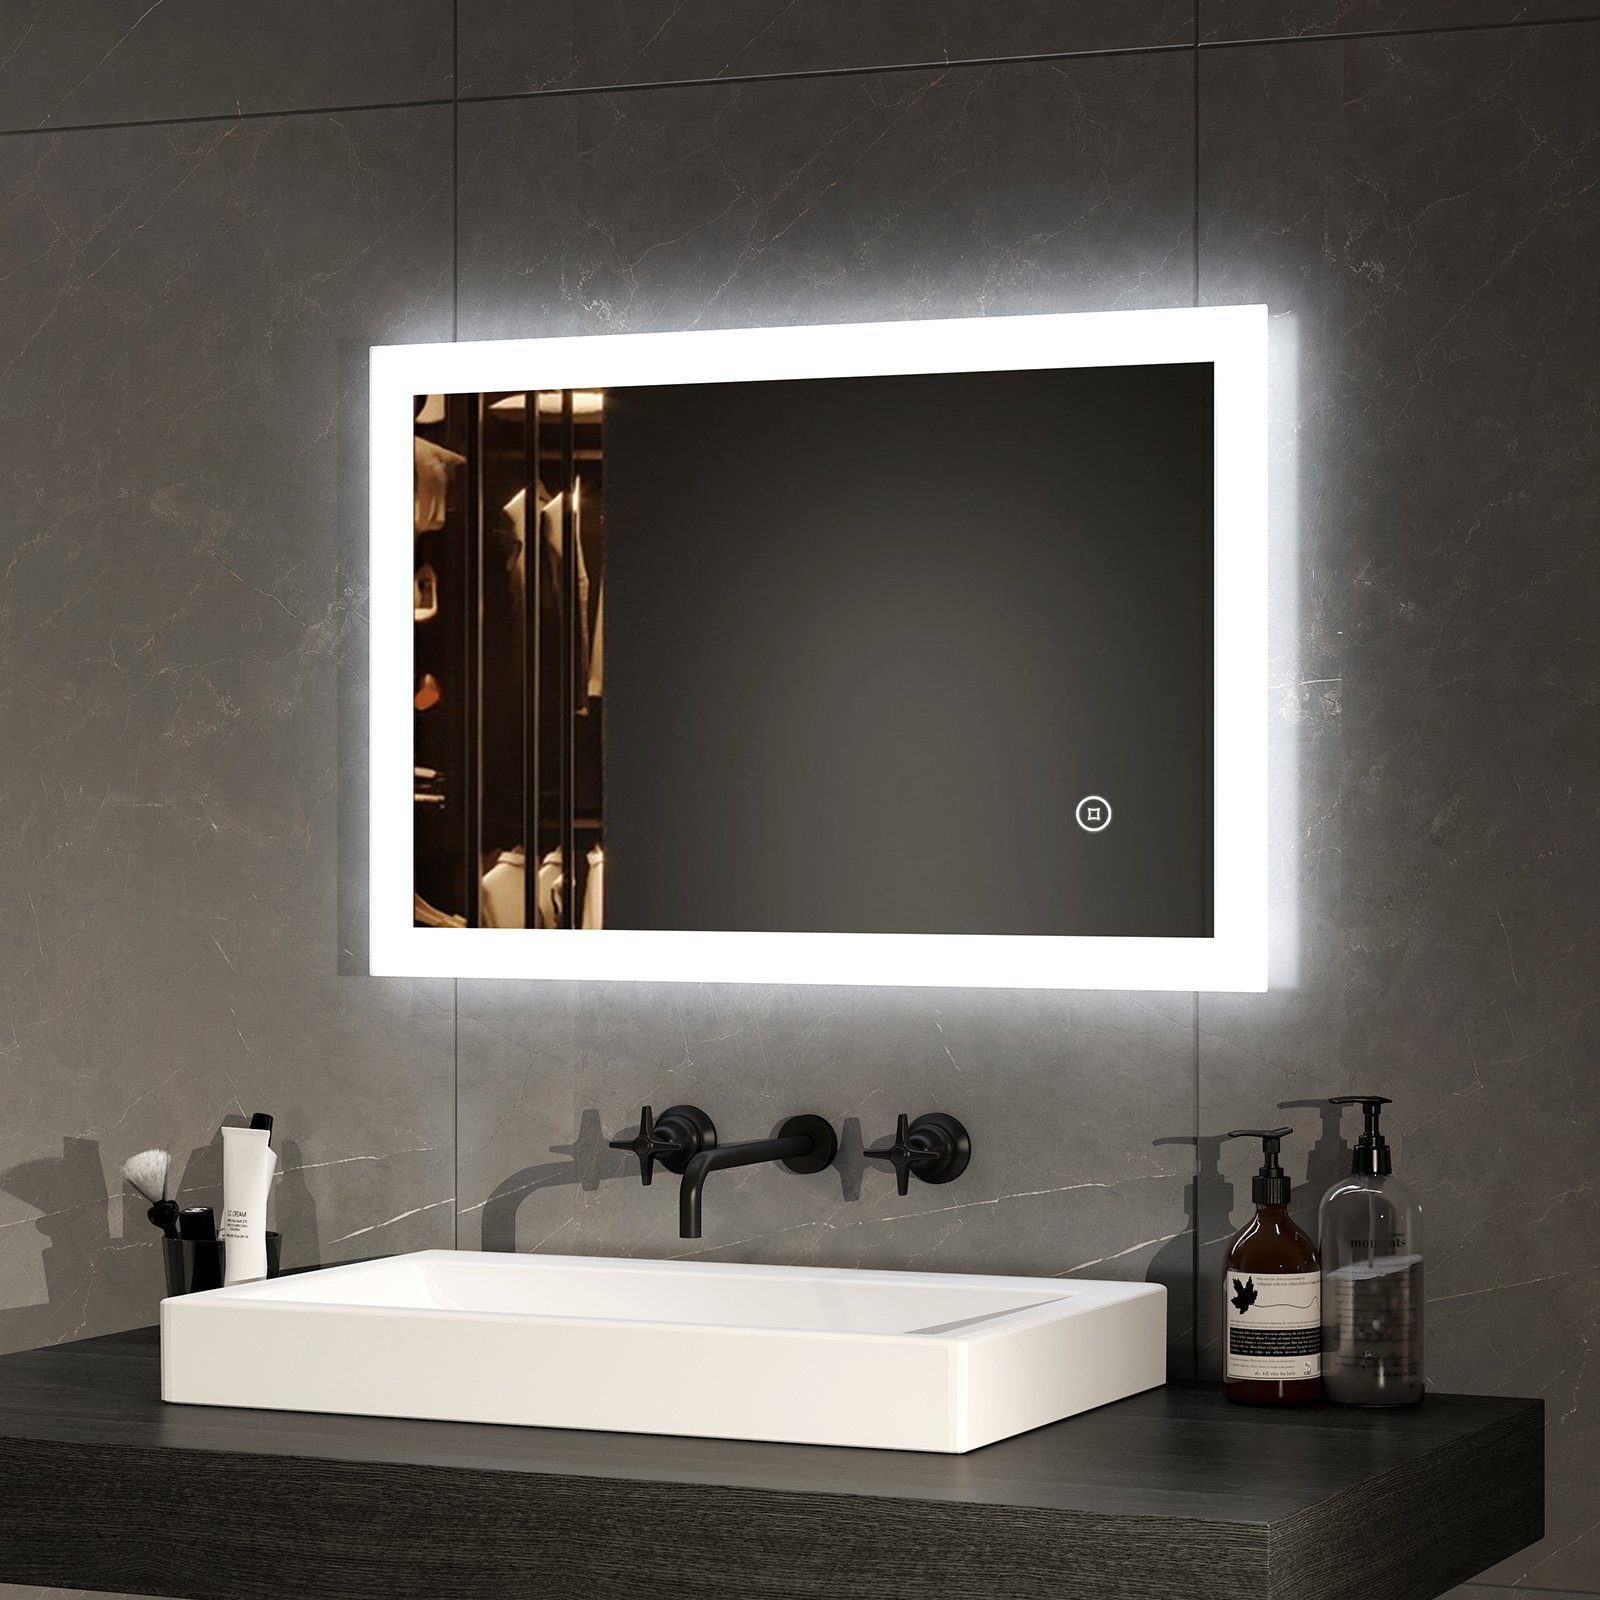 EMKE Badspiegel EMKE LED Badspiegel Badezimmerspiegel mit Beleuchtung, Touch-schalter und Beschlagfrei